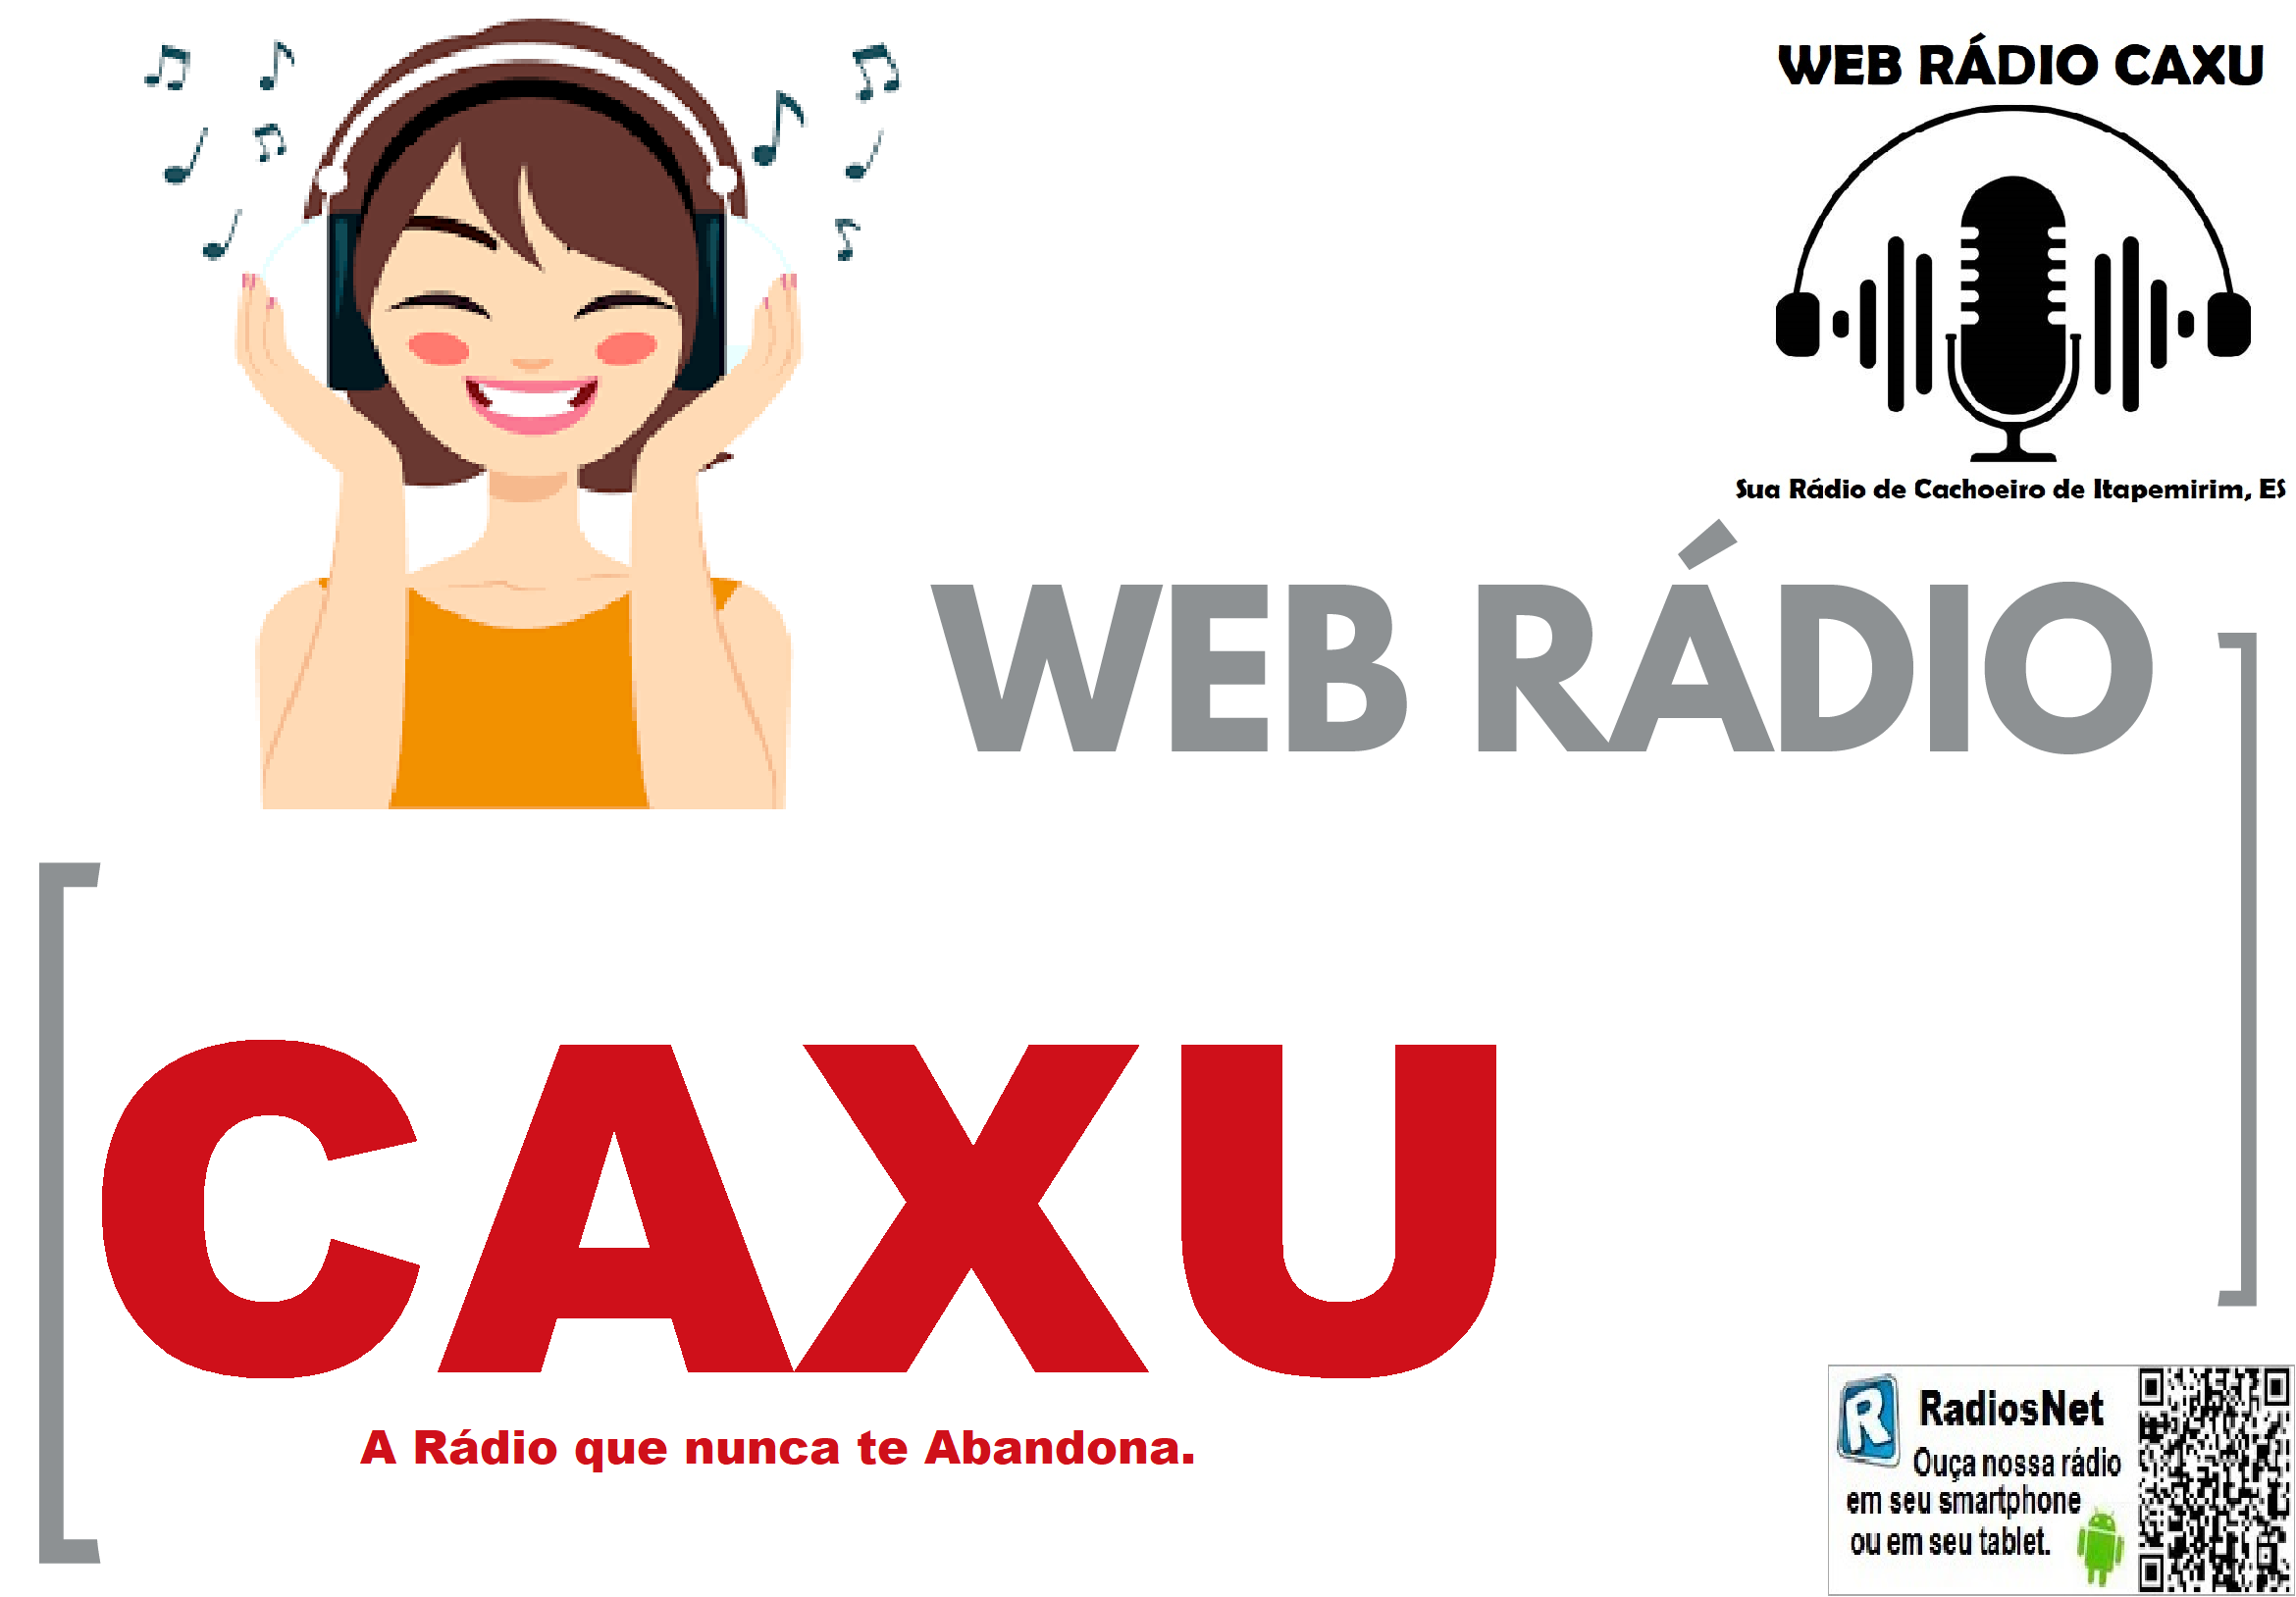 Web Rádio Caxu! 24h no Ar 